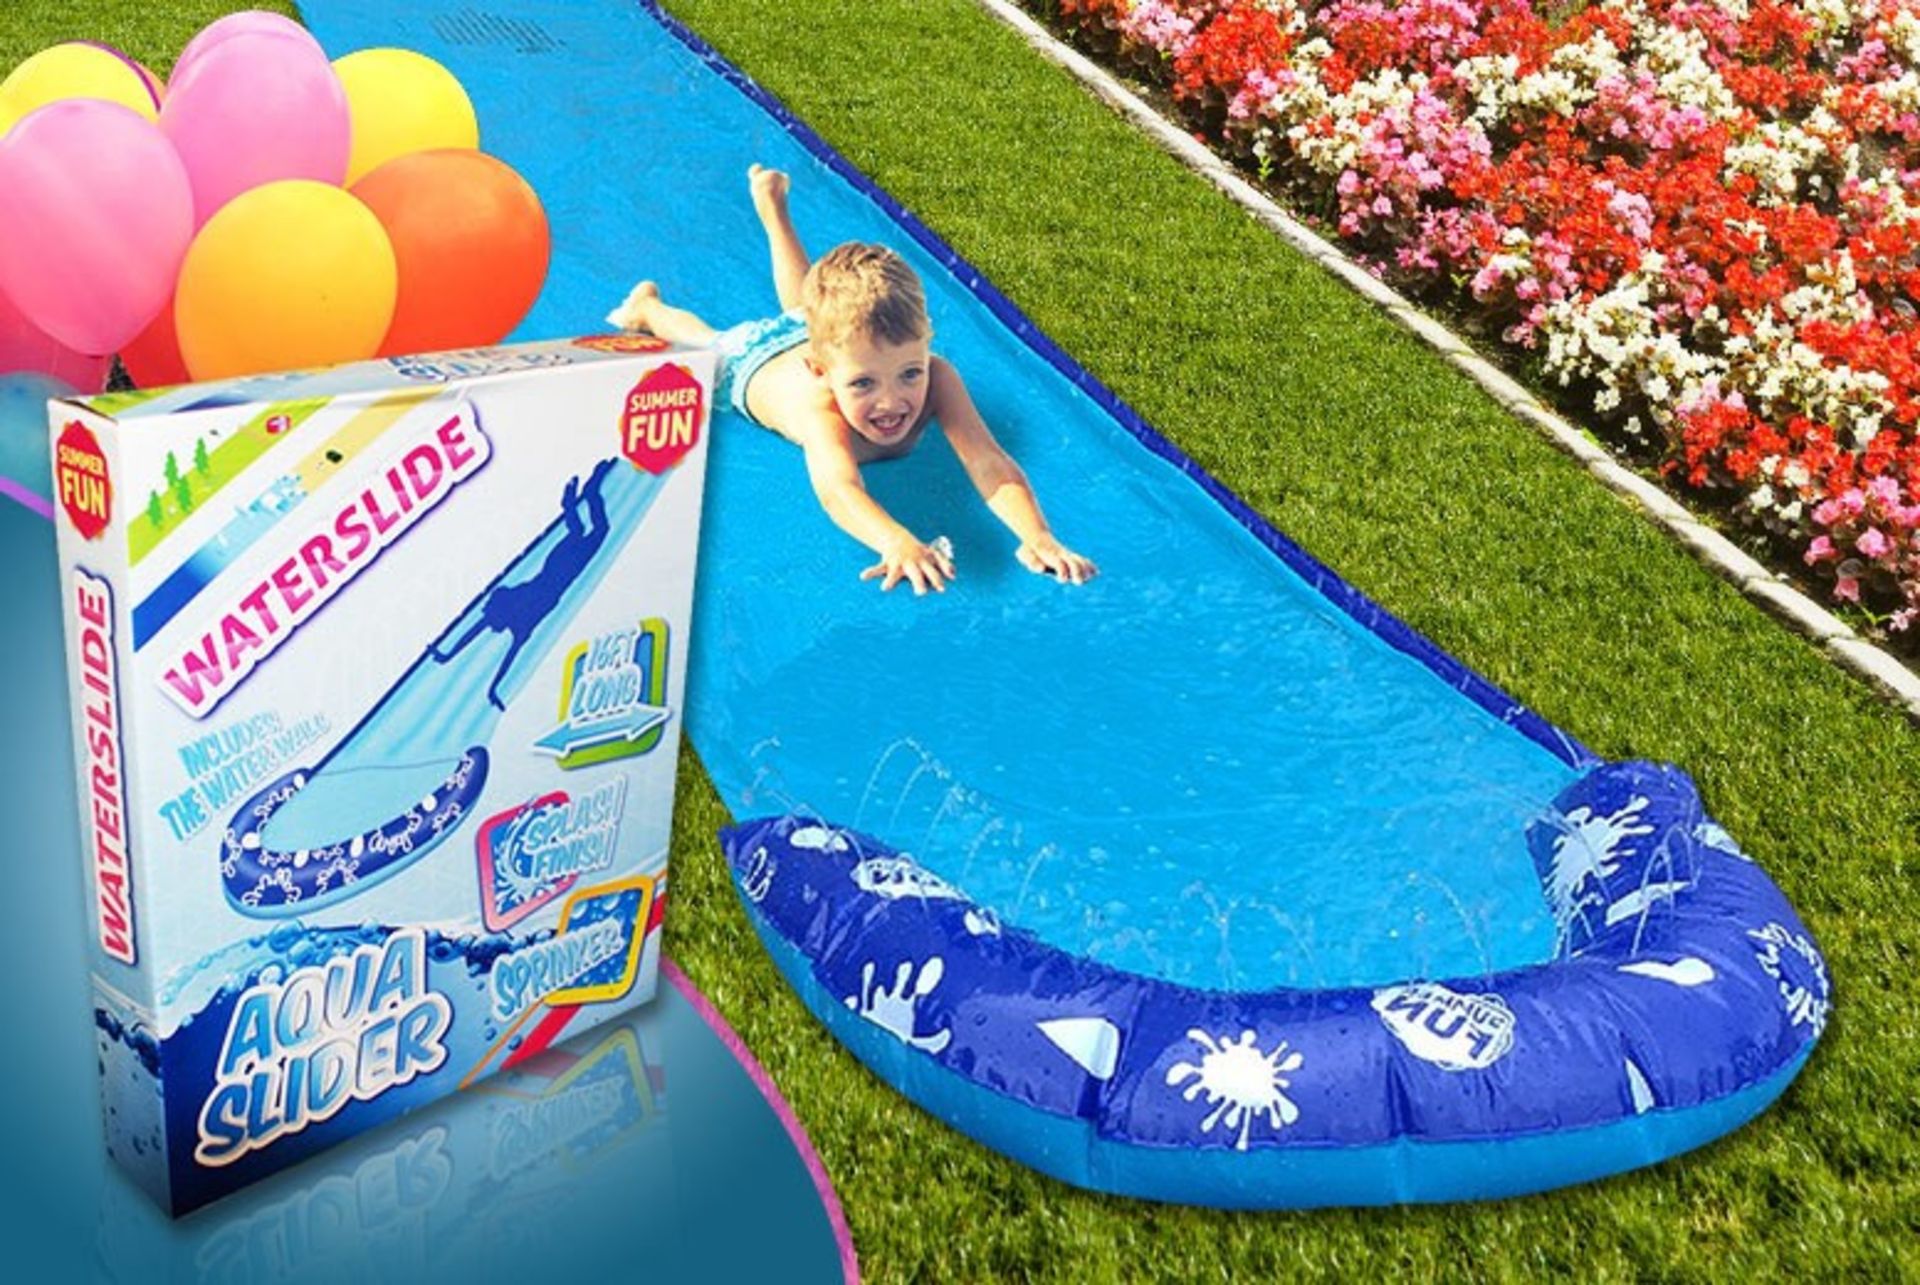 1 x "Aqua-Slider" 16ft Water Slide - Garden Slip-n-Slide Inflatable Toy - Brand New & Boxed - - Image 3 of 4